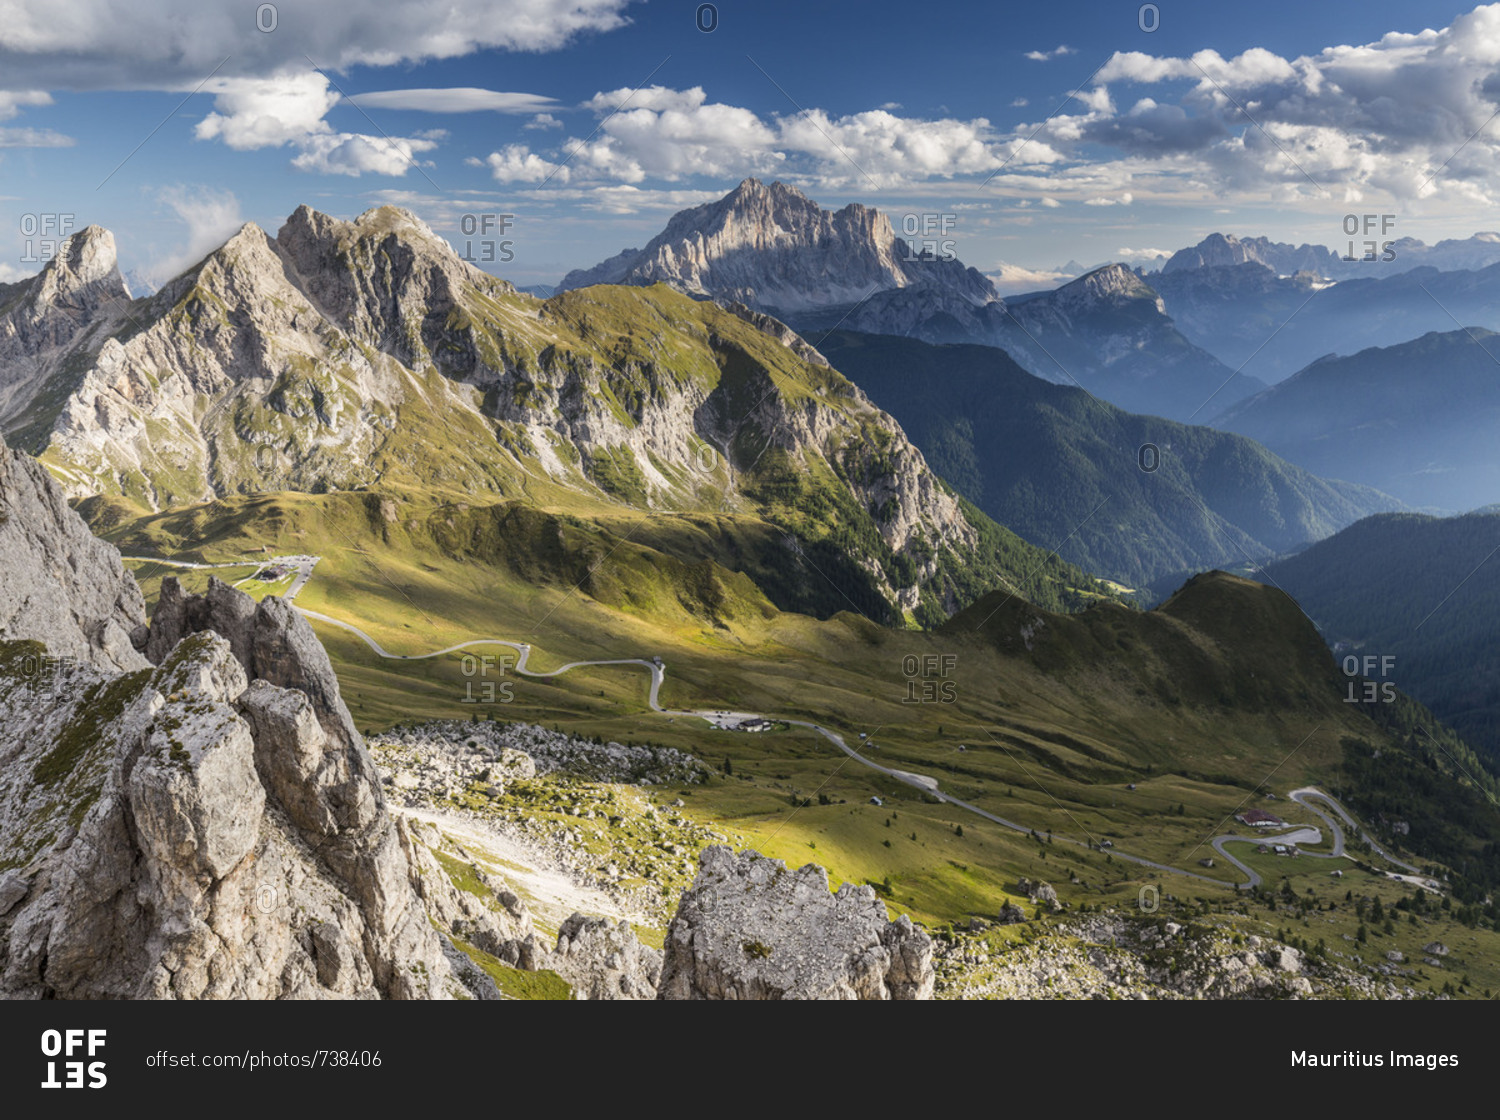 Europe, Italy, Alps, Dolomites, Mountains, Passo Giau, View from Rifugio Nuvolau